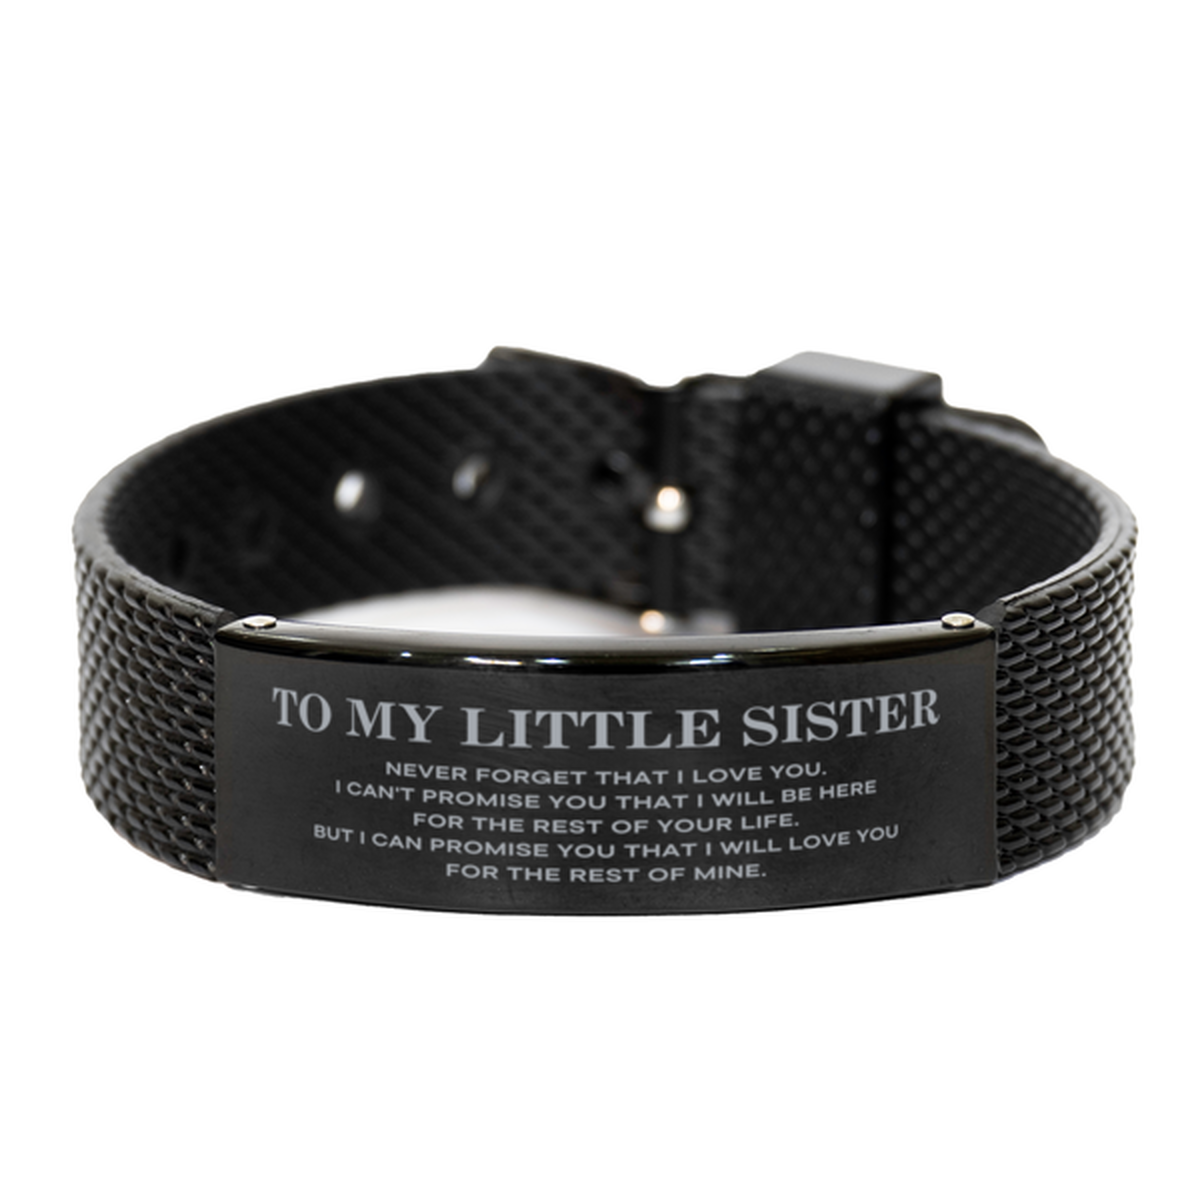 To My Little Sister Gifts, I will love you for the rest of mine, Love Little Sister Bracelet, Birthday Christmas Unique Black Shark Mesh Bracelet For Little Sister